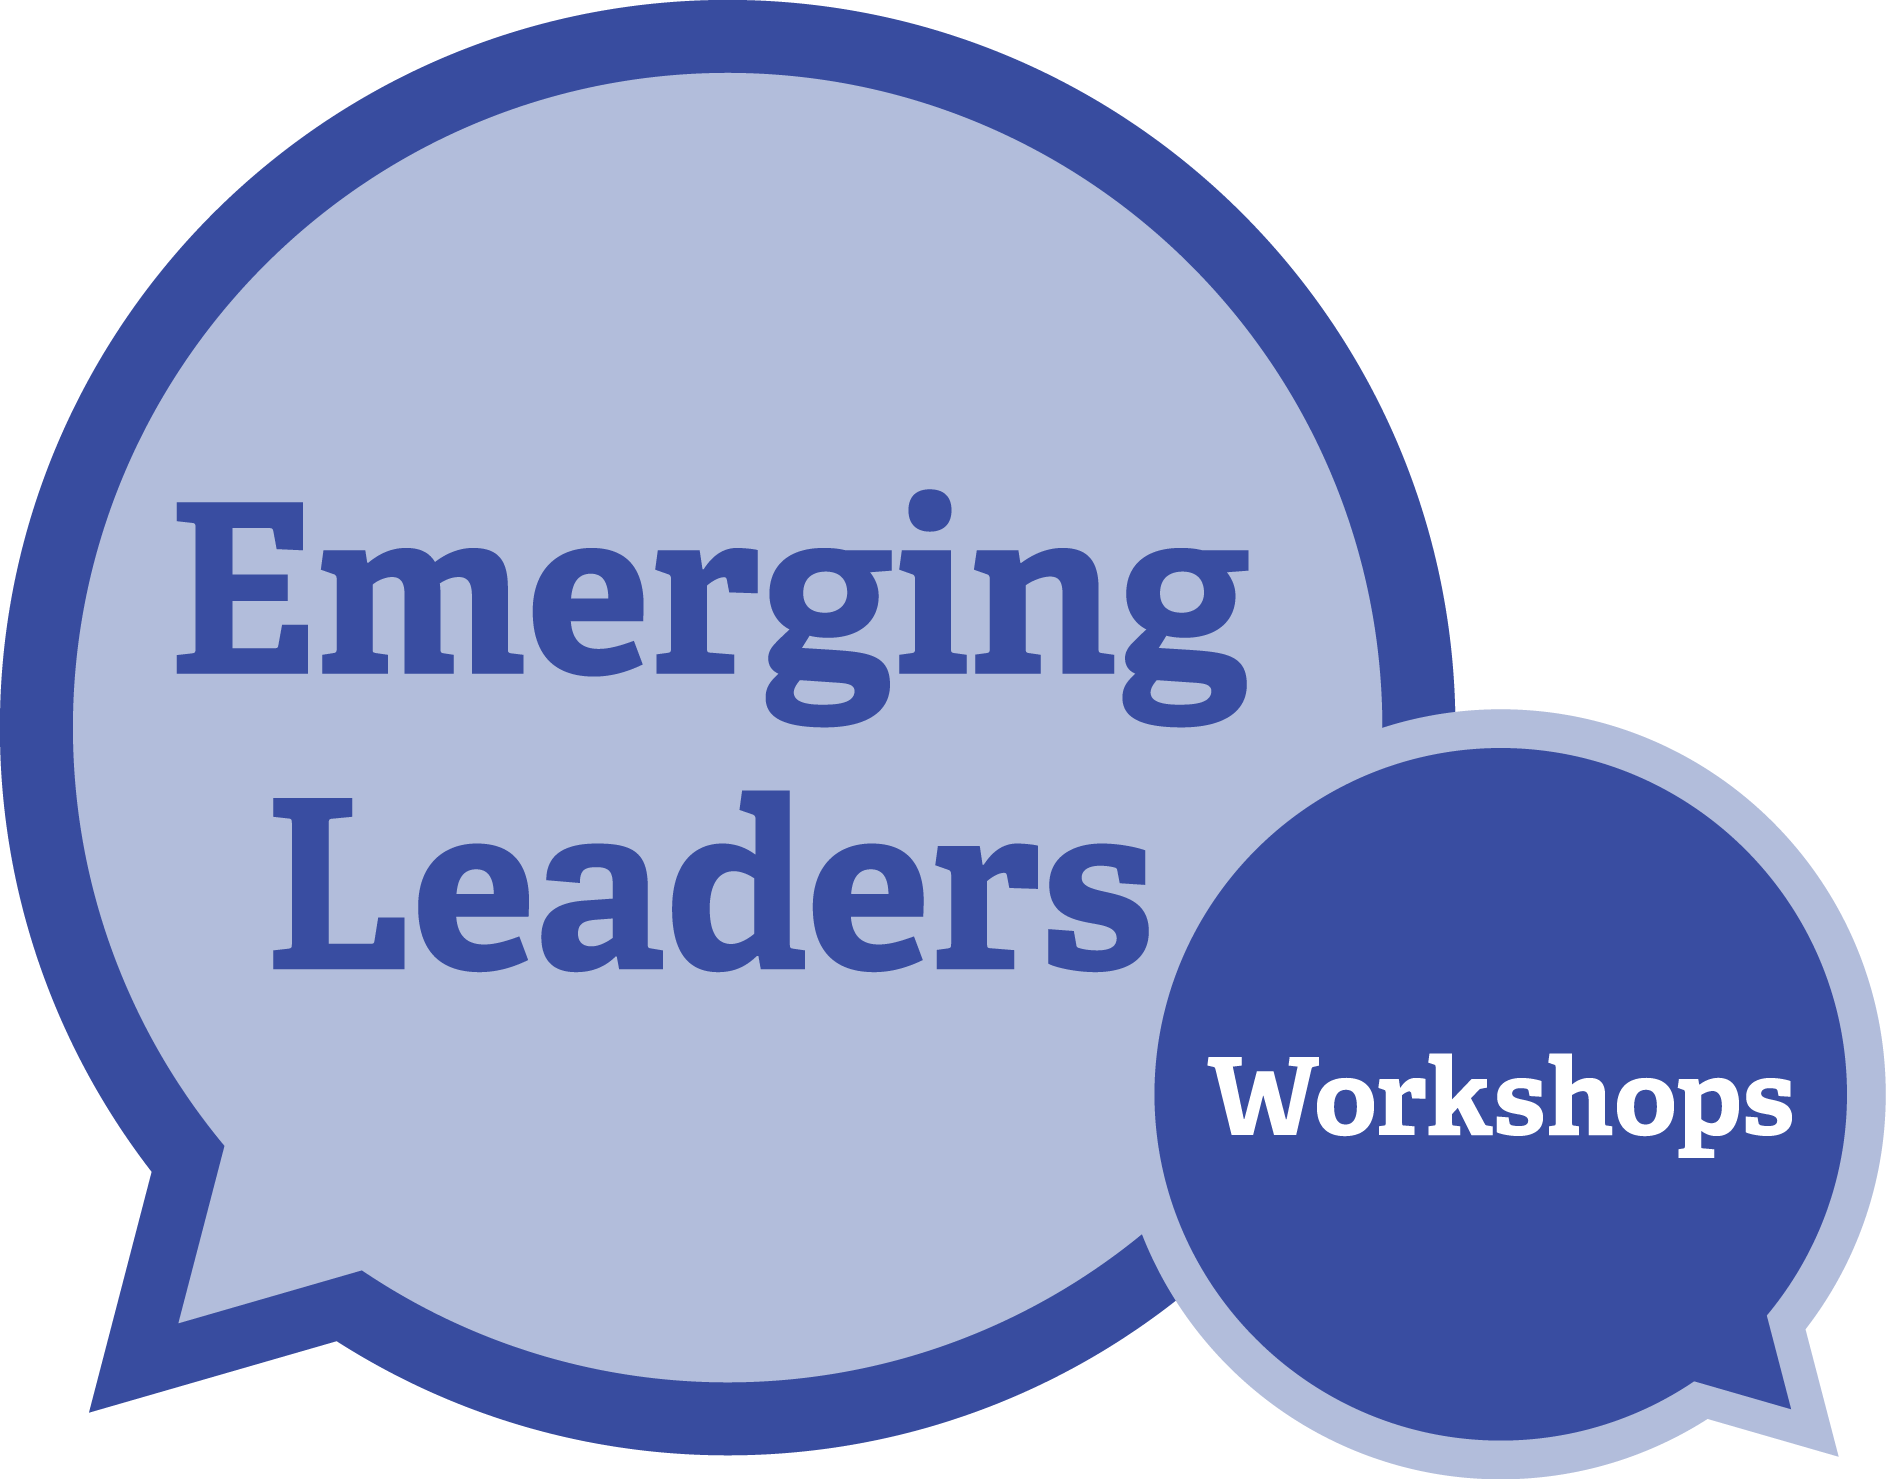 Emerging Leaders workshops